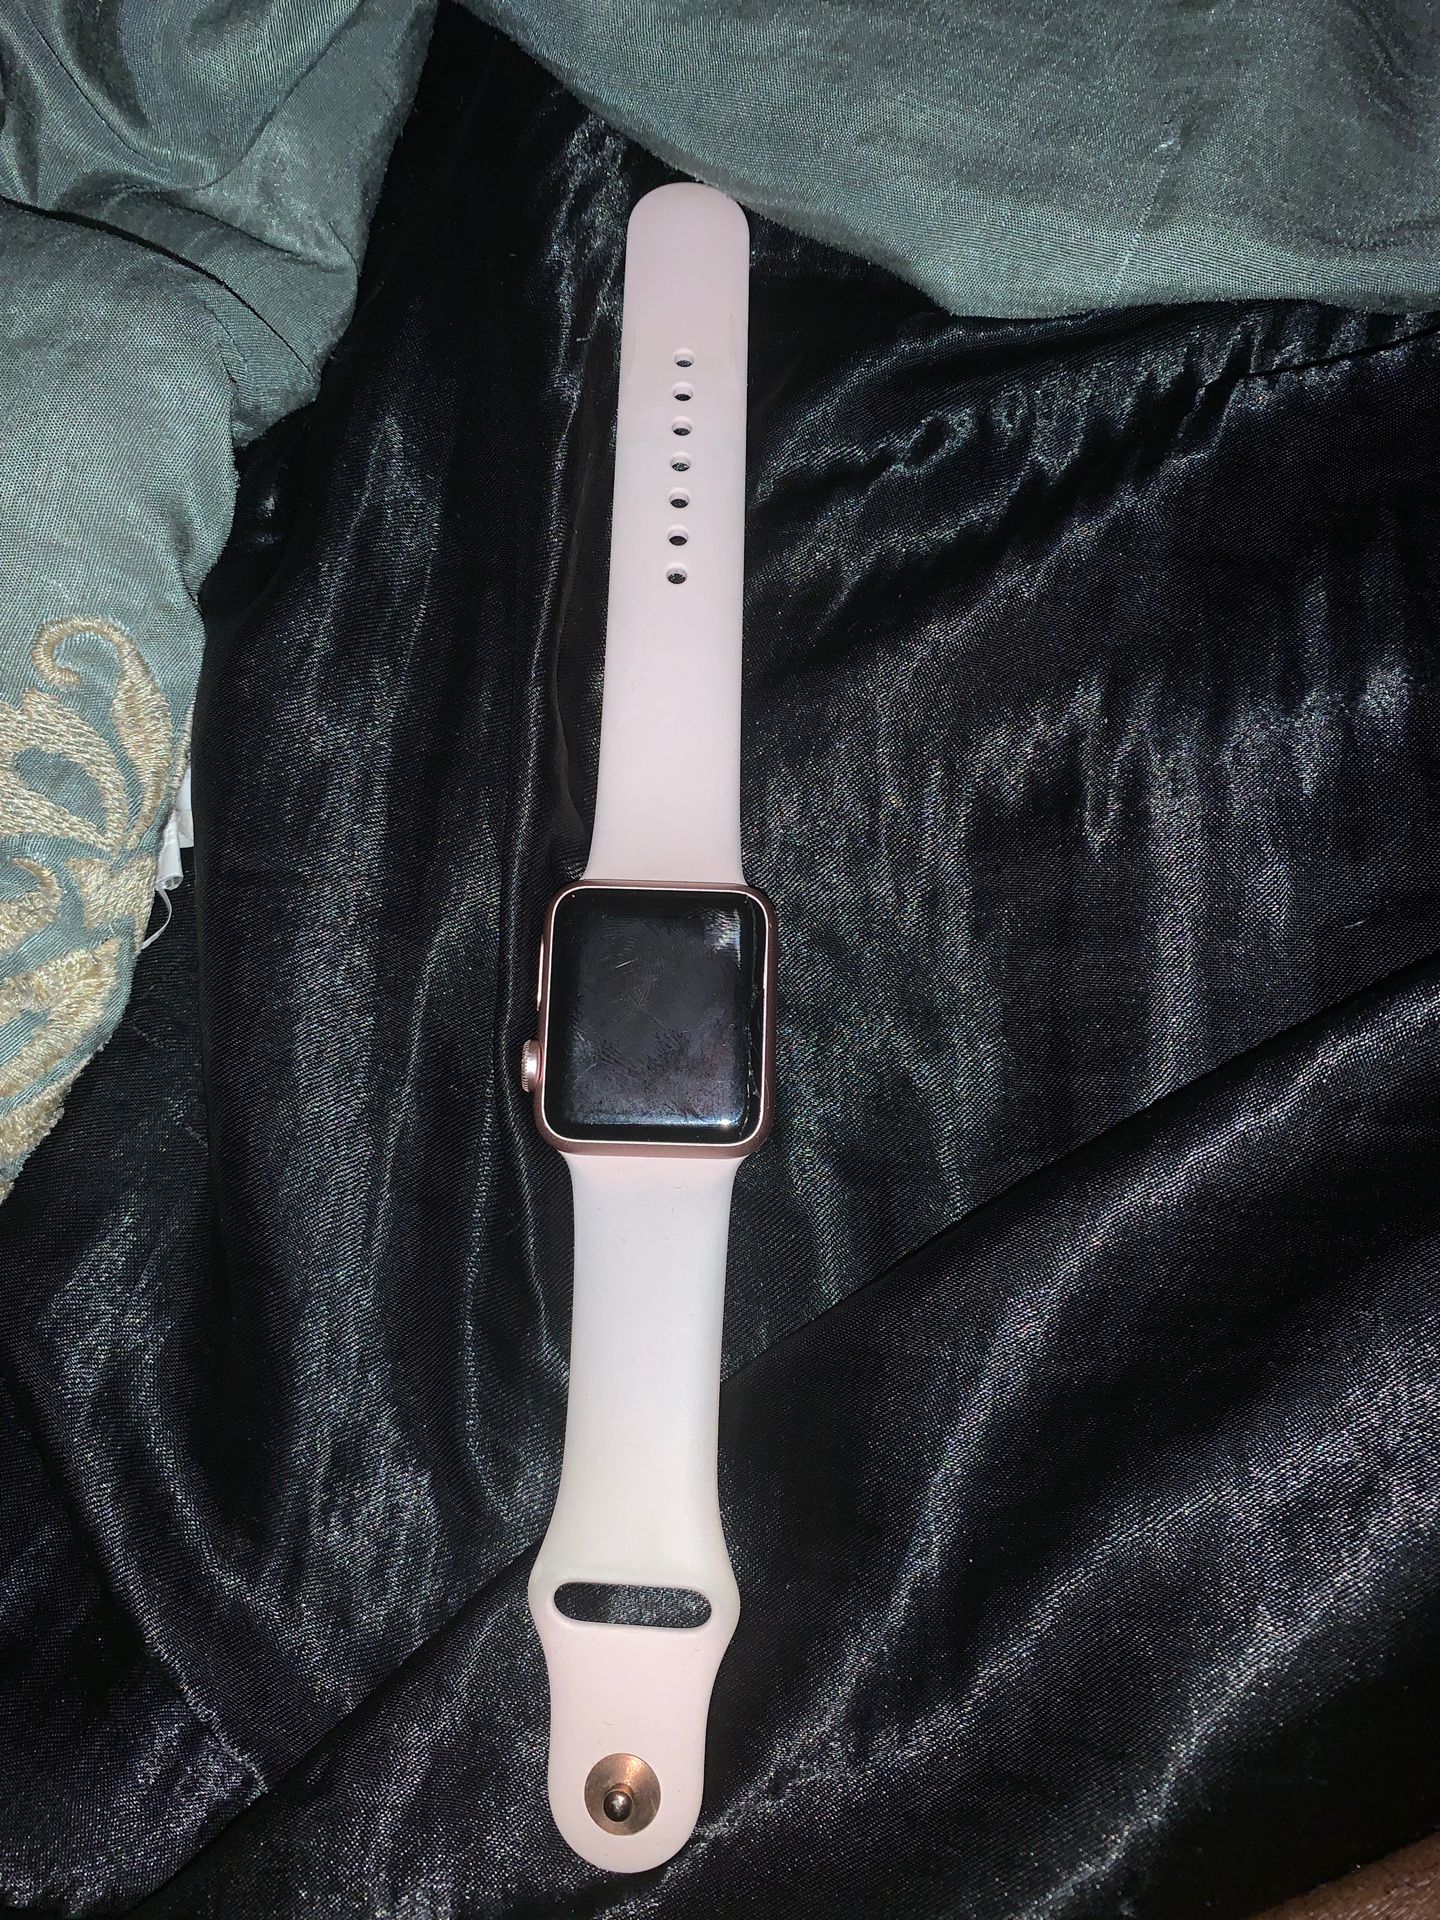 Apple Watch Unlocked !!!